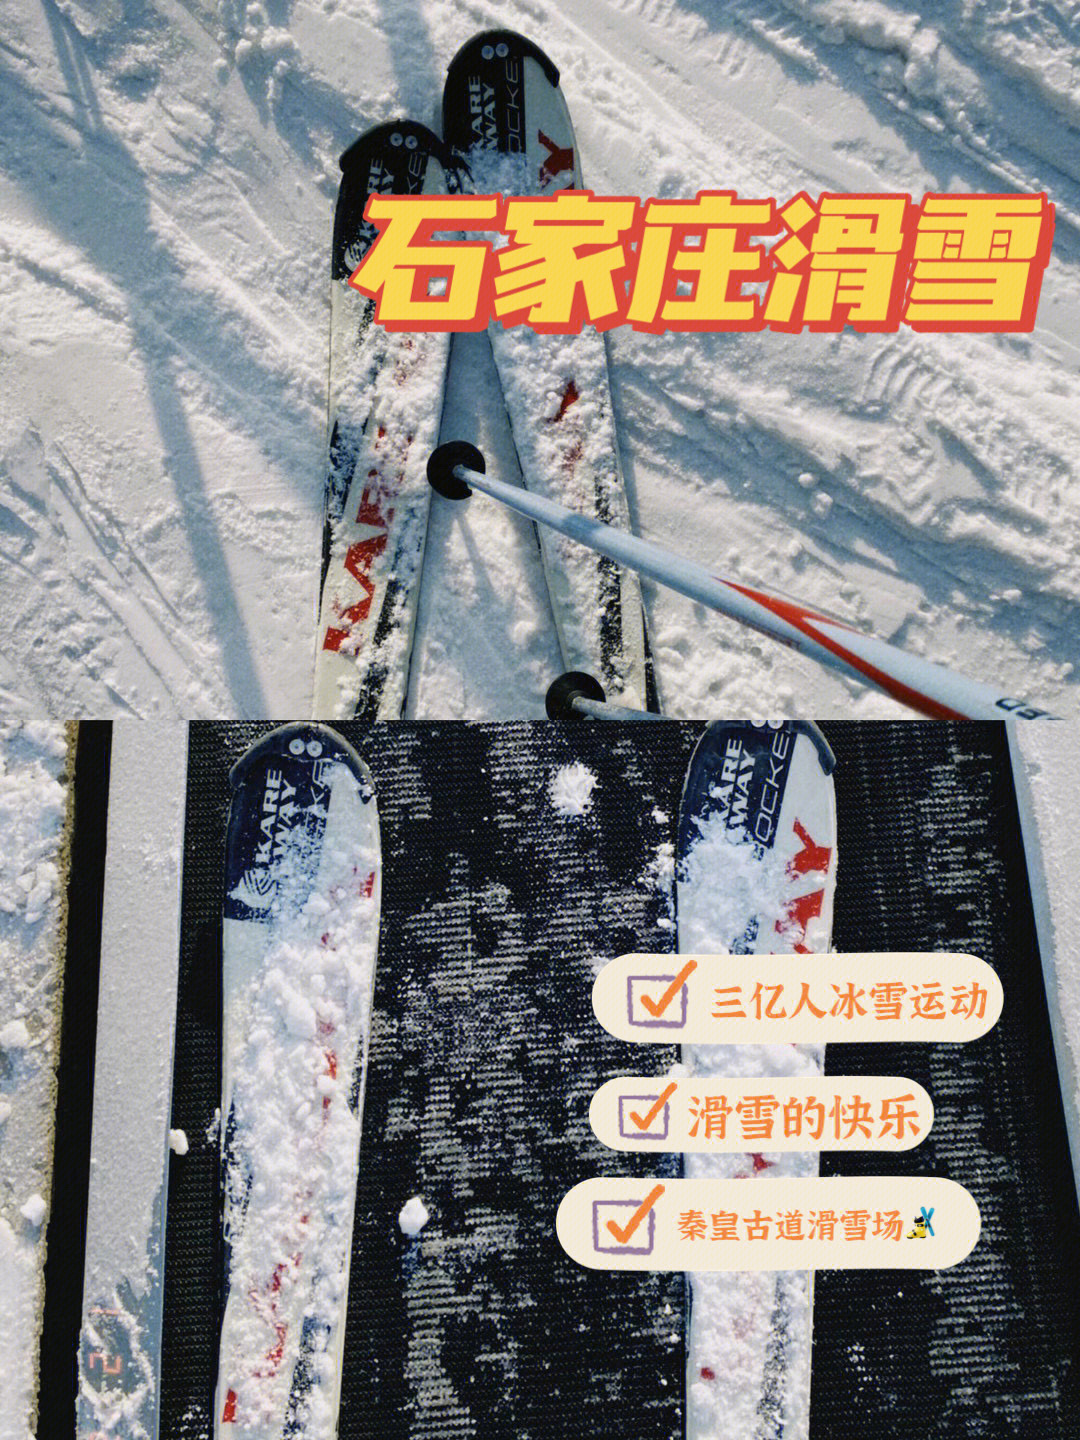 秦皇古道滑雪场门票图片